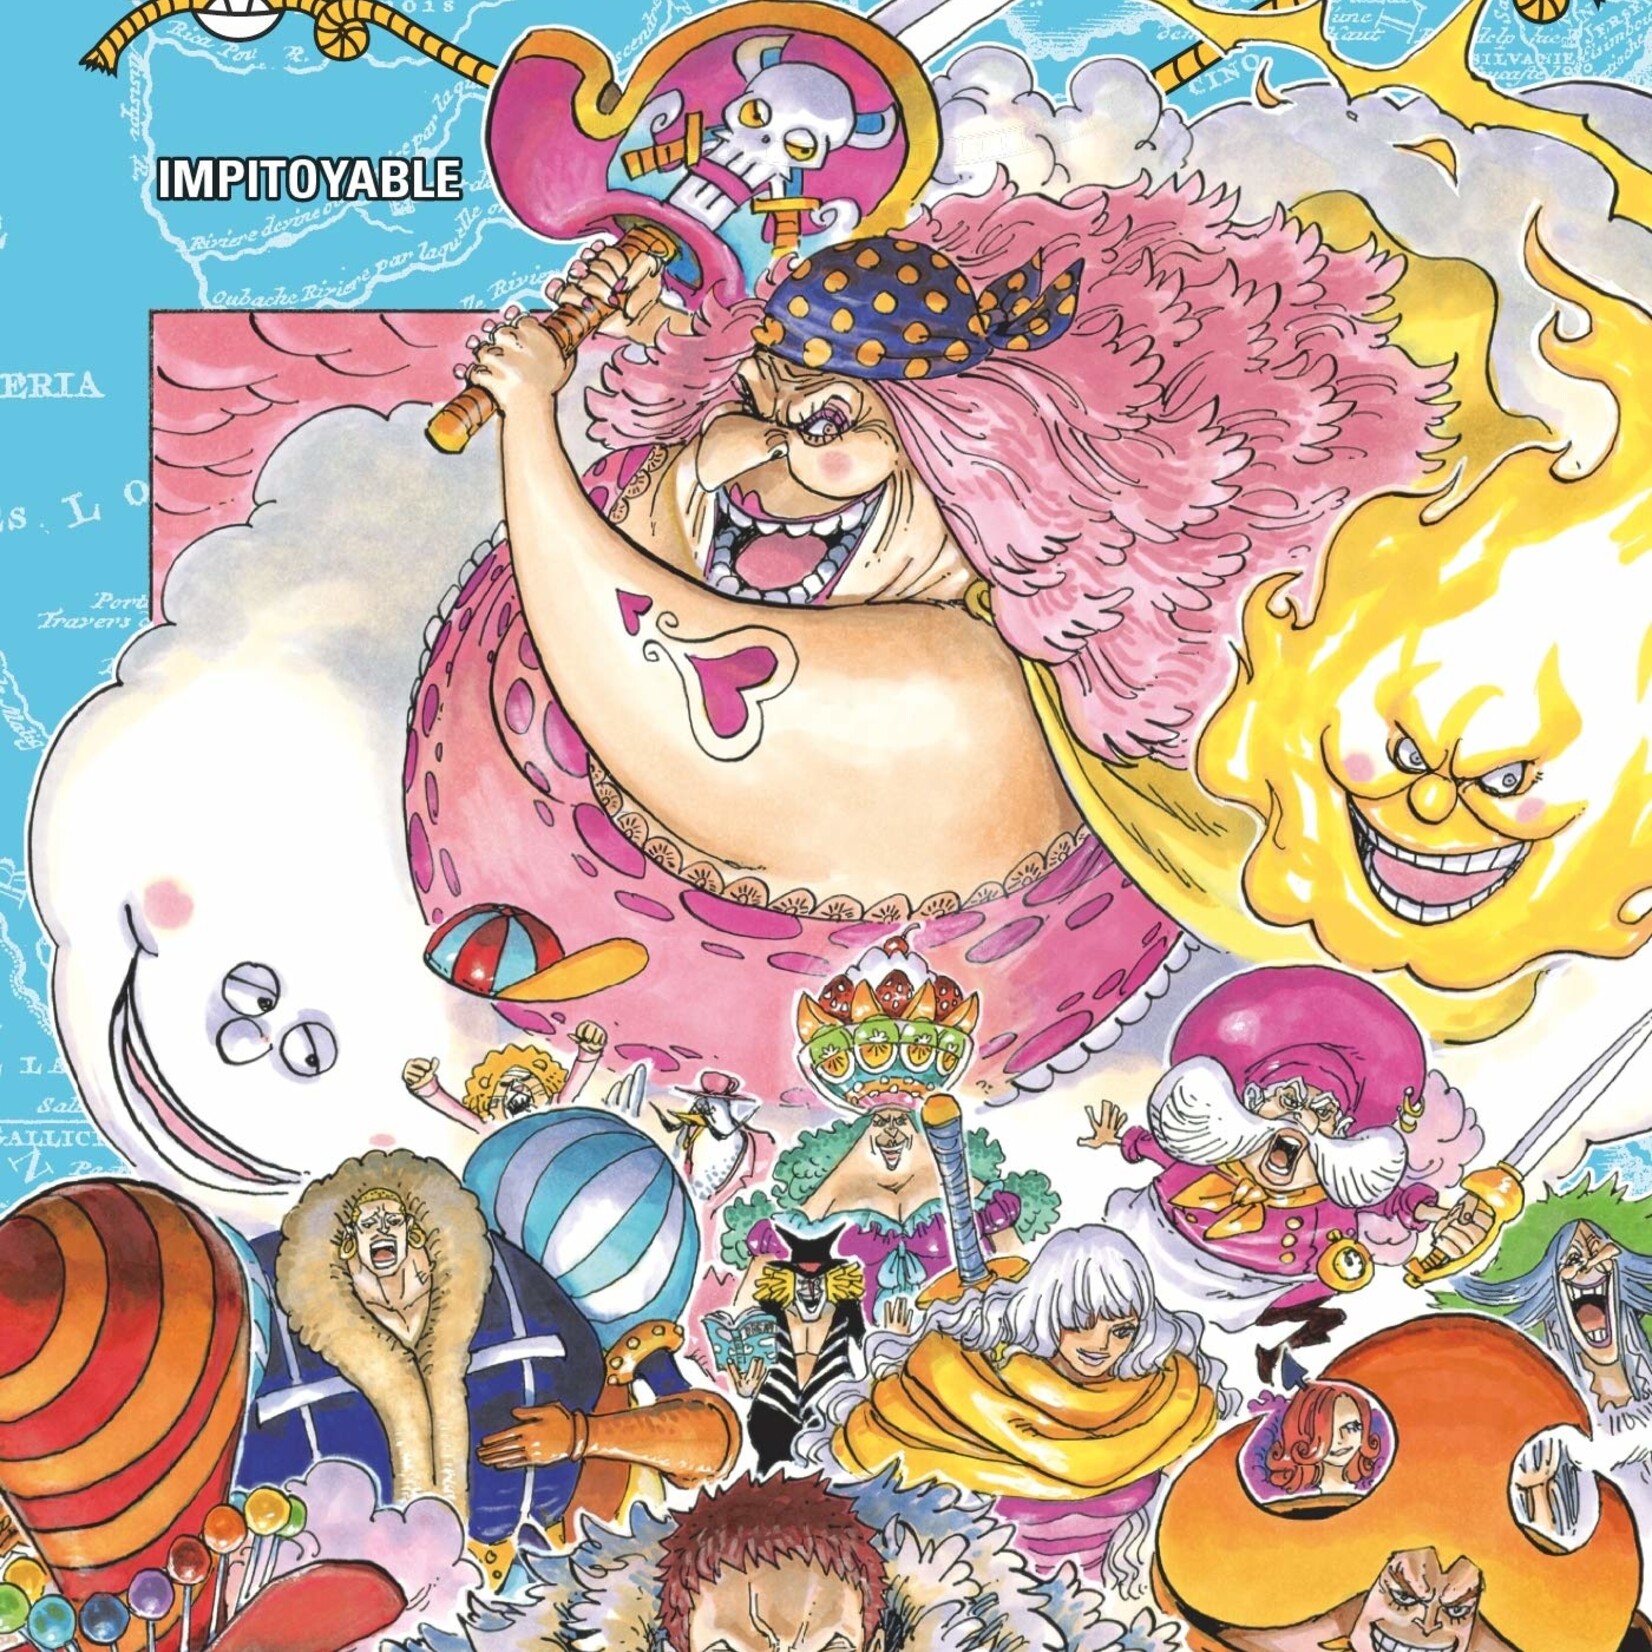 Manga - One Piece Tome 65 - Maitre des Jeux